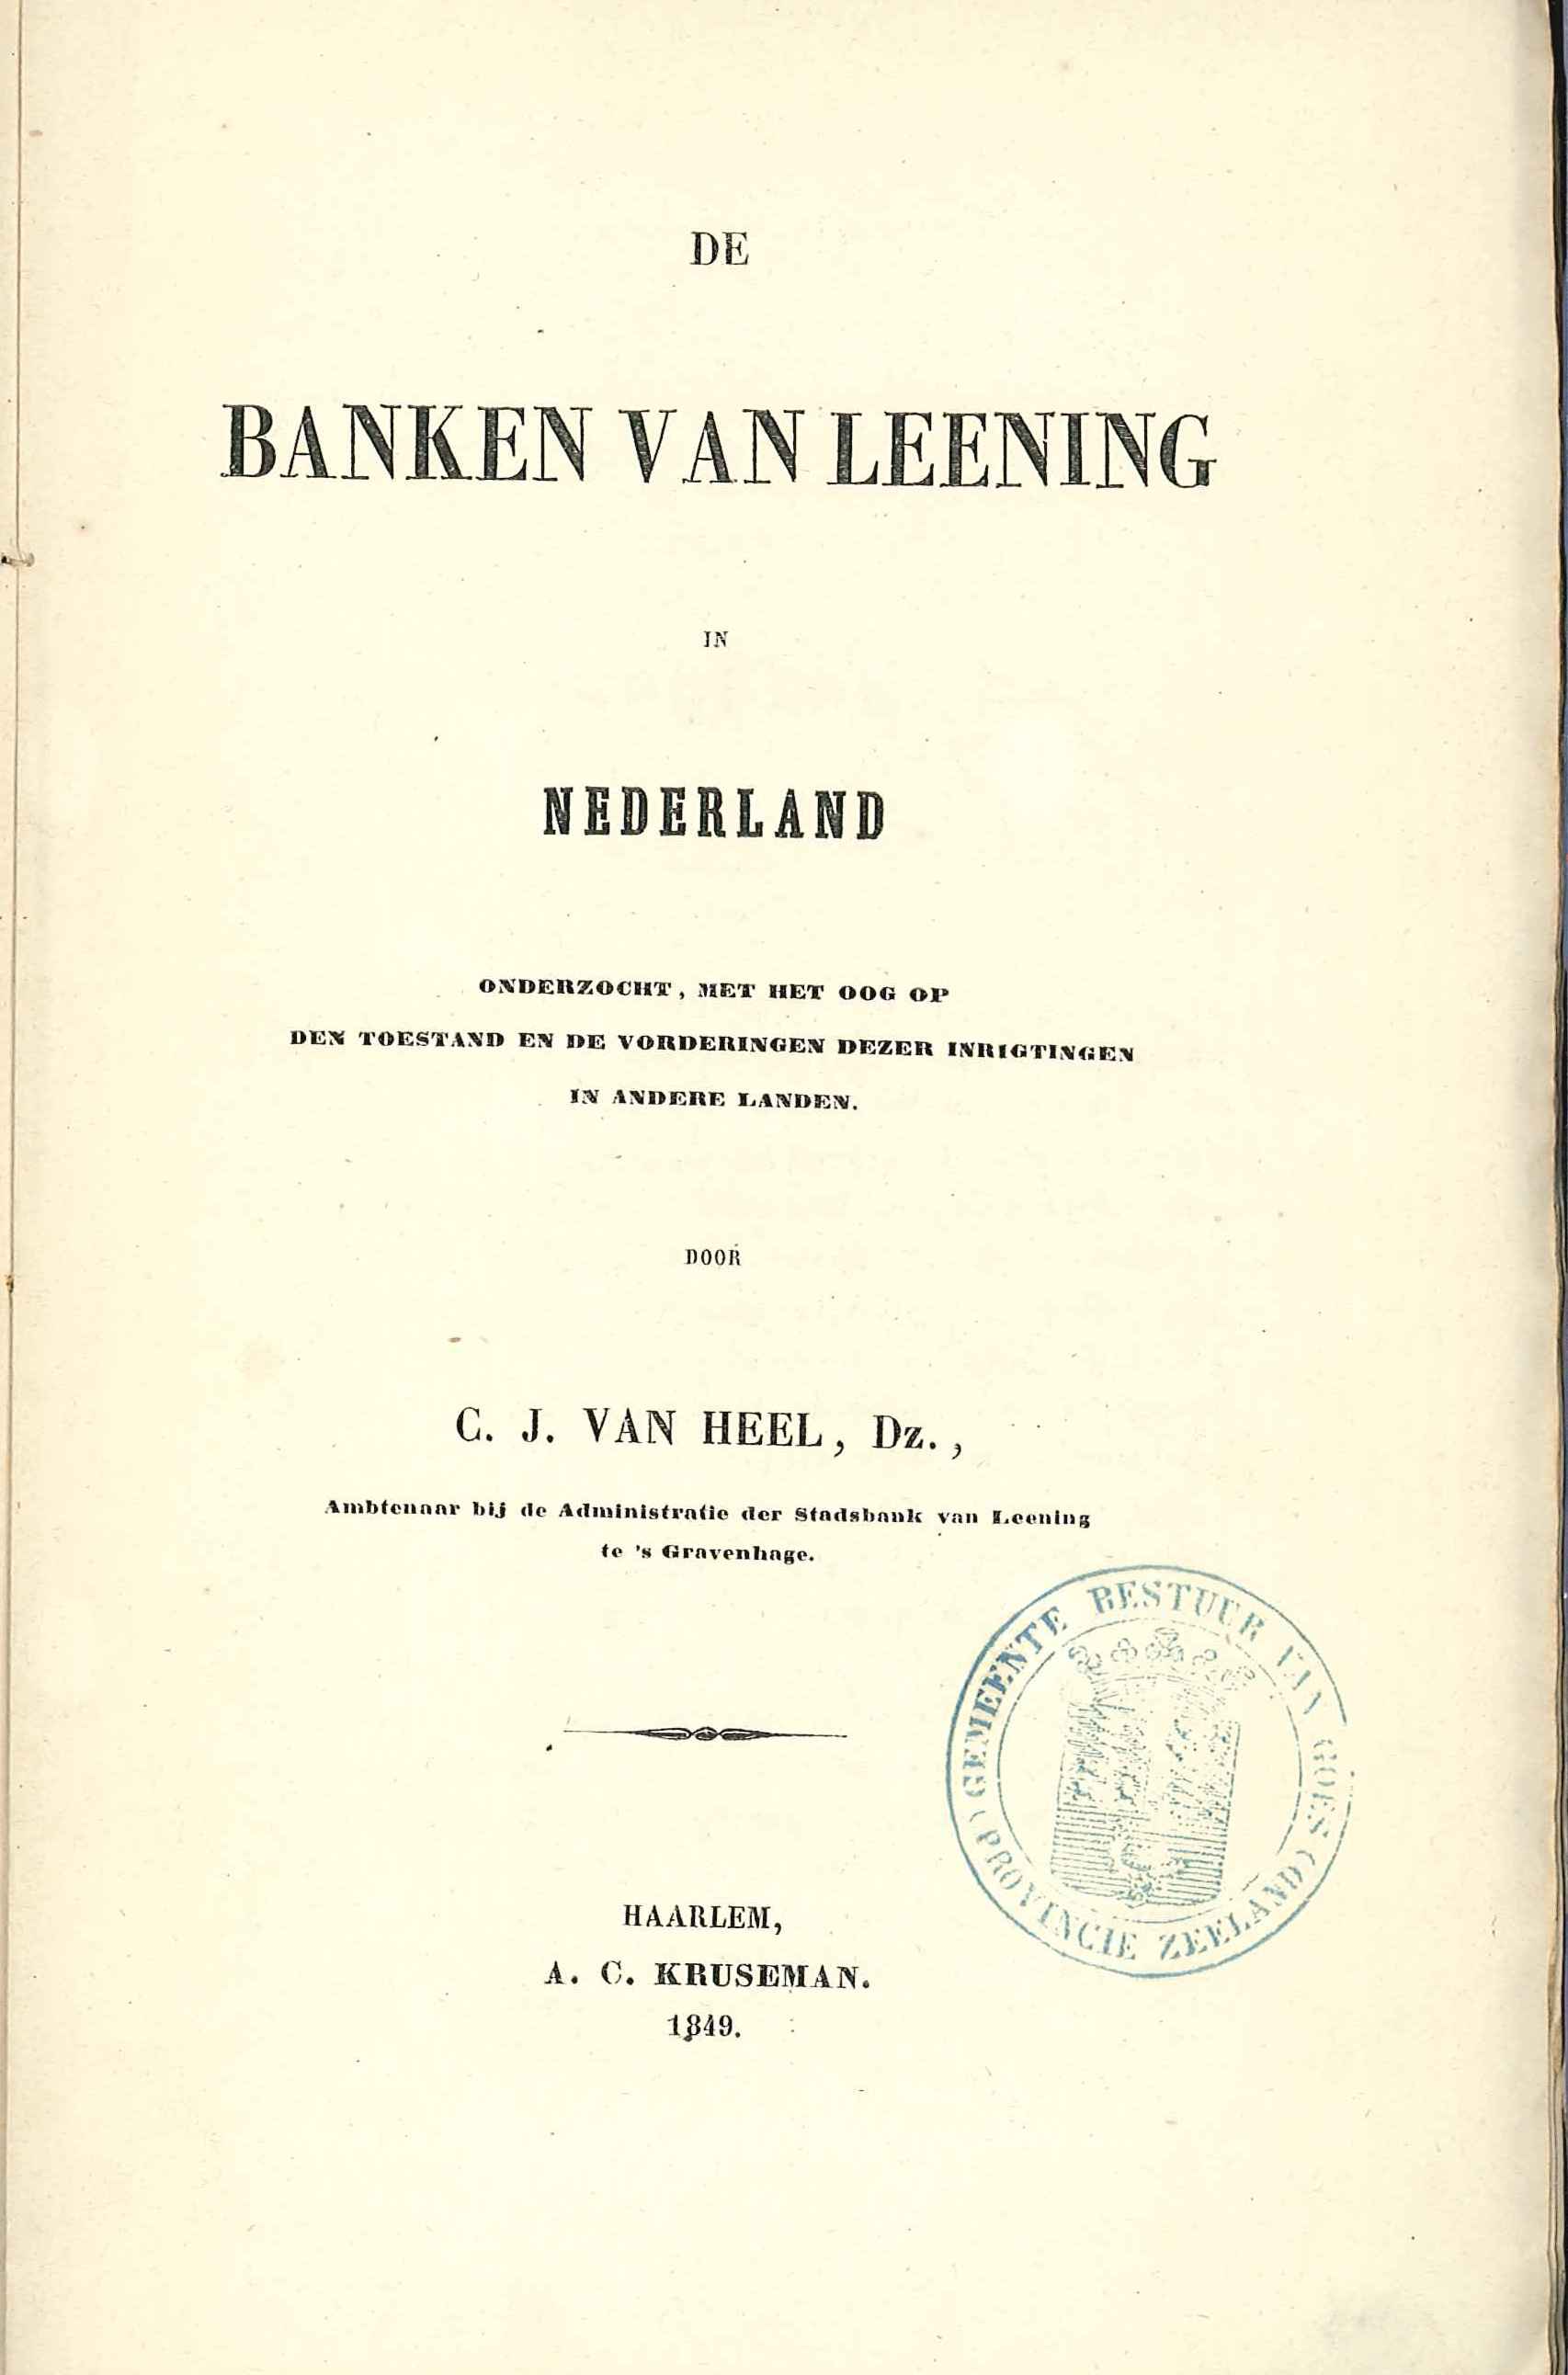  Titelblad banken van leening, C.J. van Heel. GAG.HB.